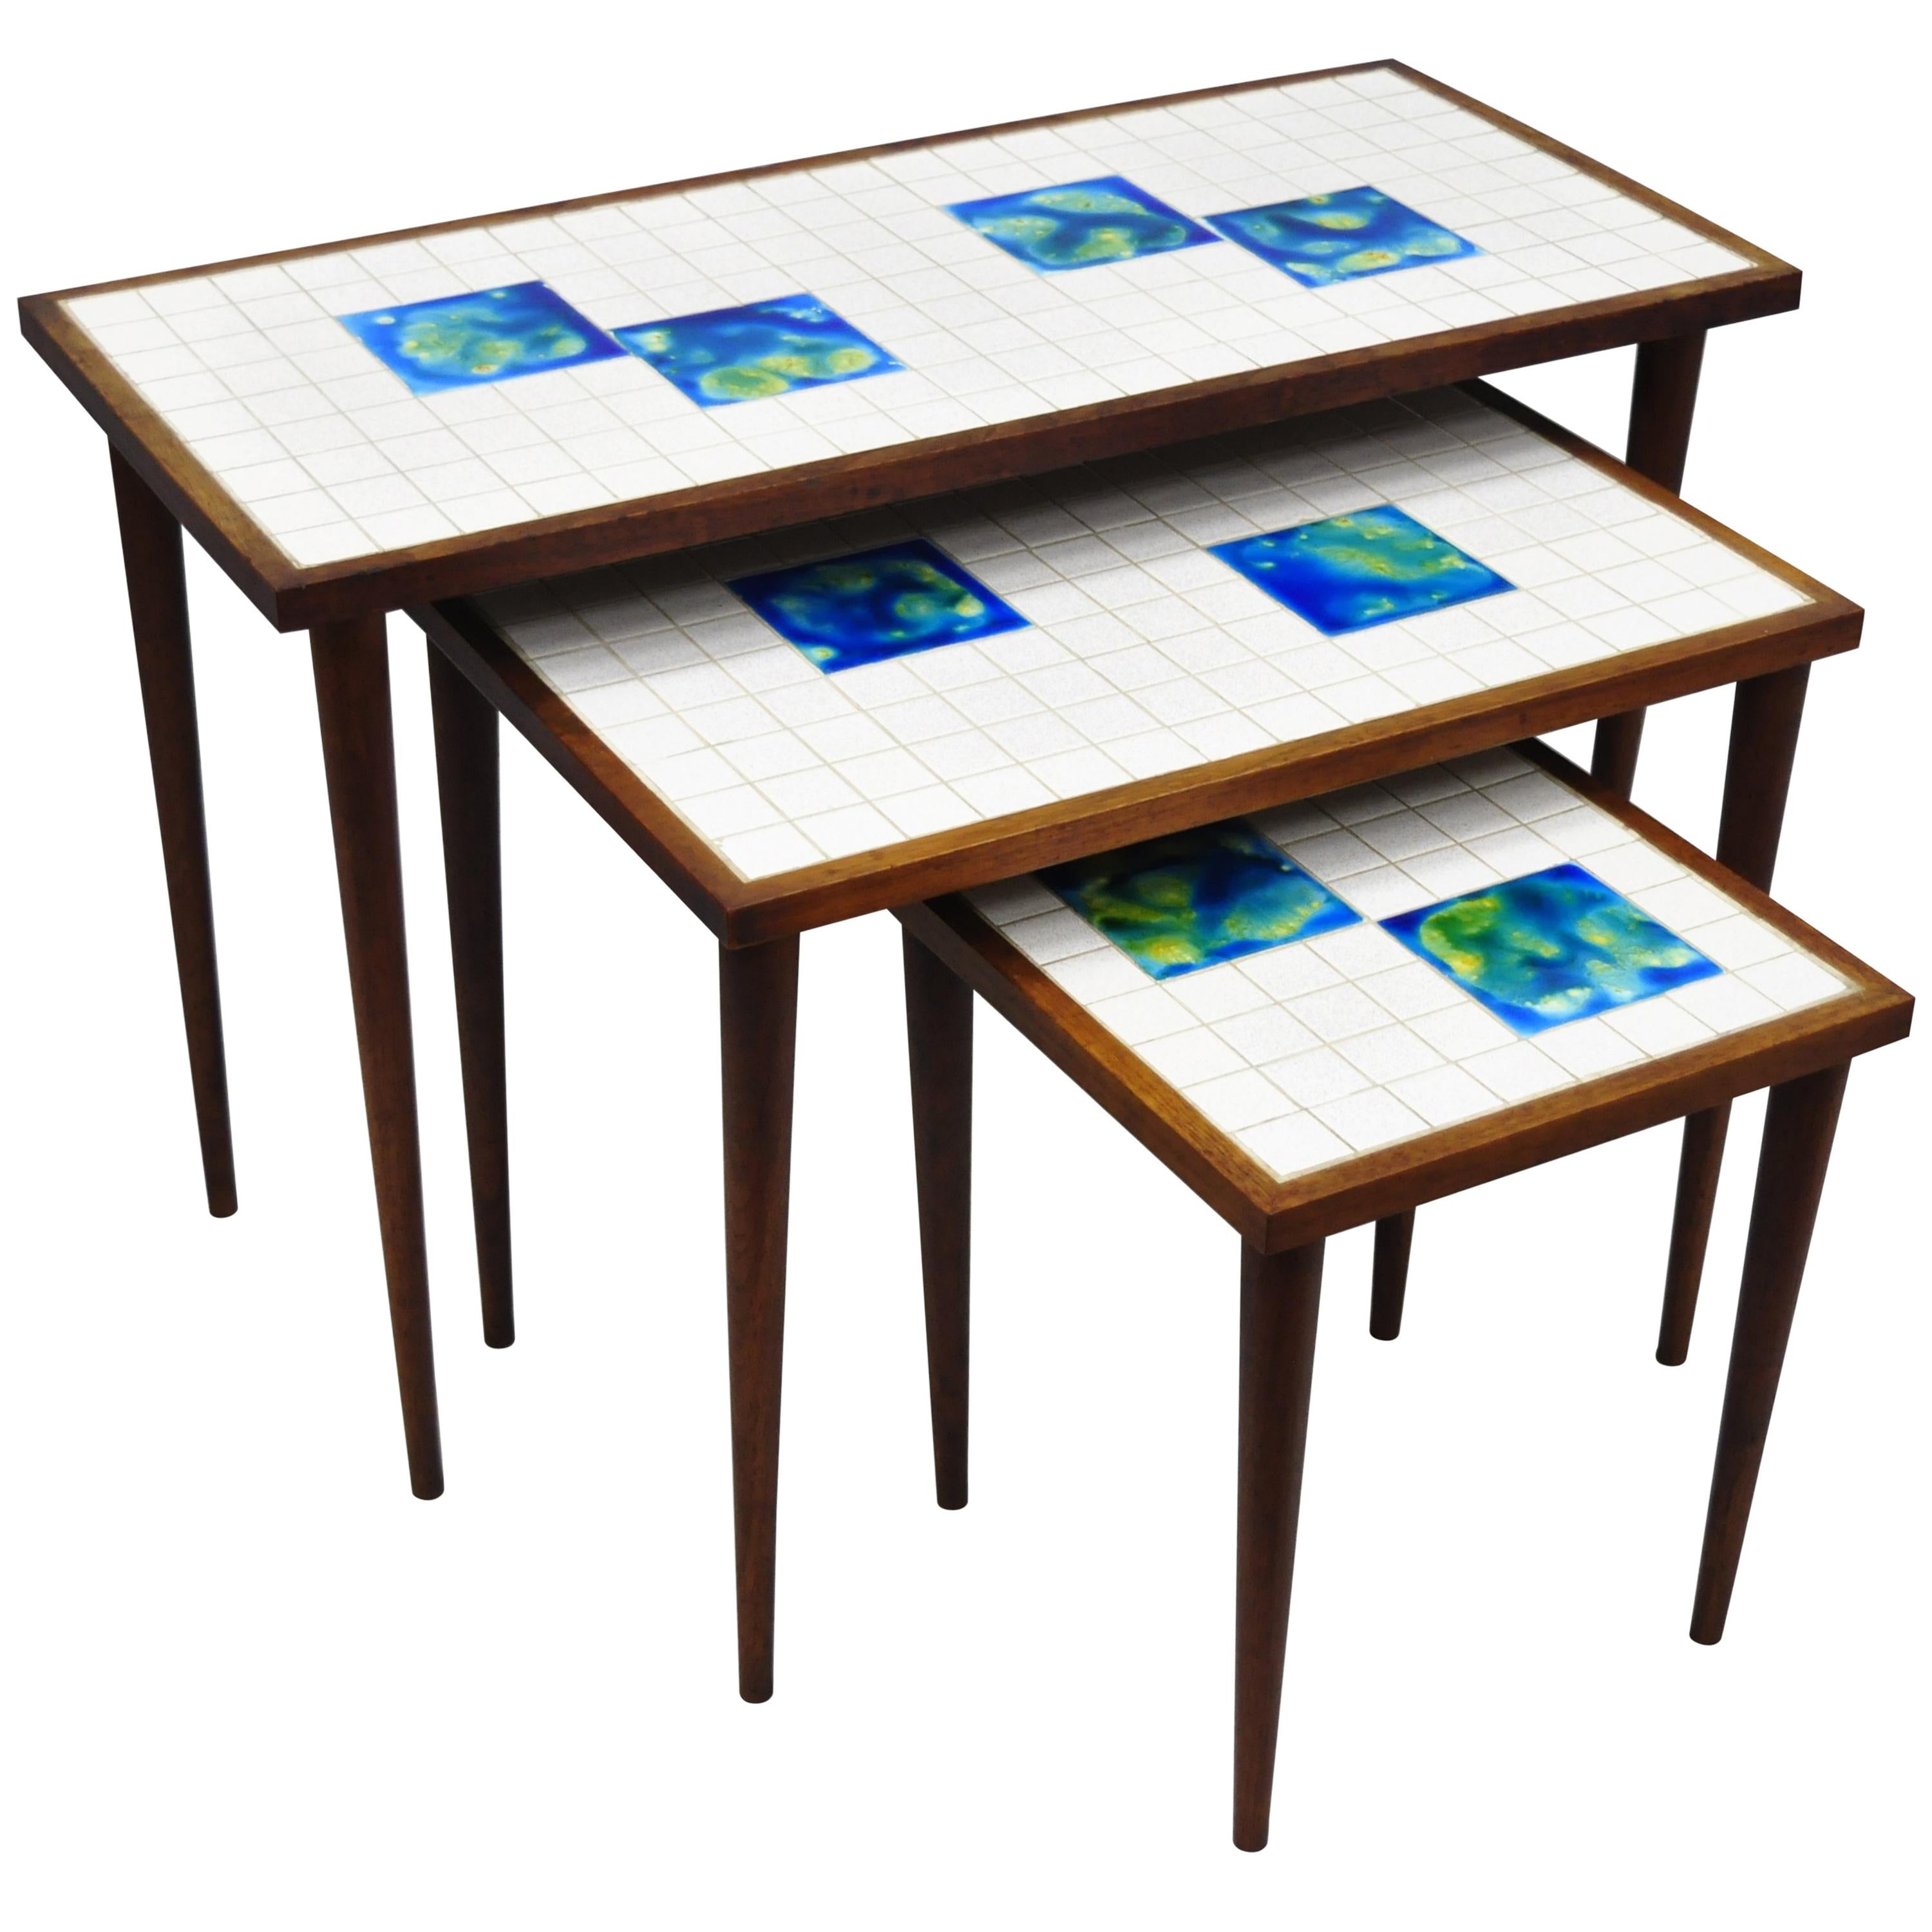 3 Mid-Century Modern Nesting Tile Top Side Tables, Blue Green Tiles, Danish Teak